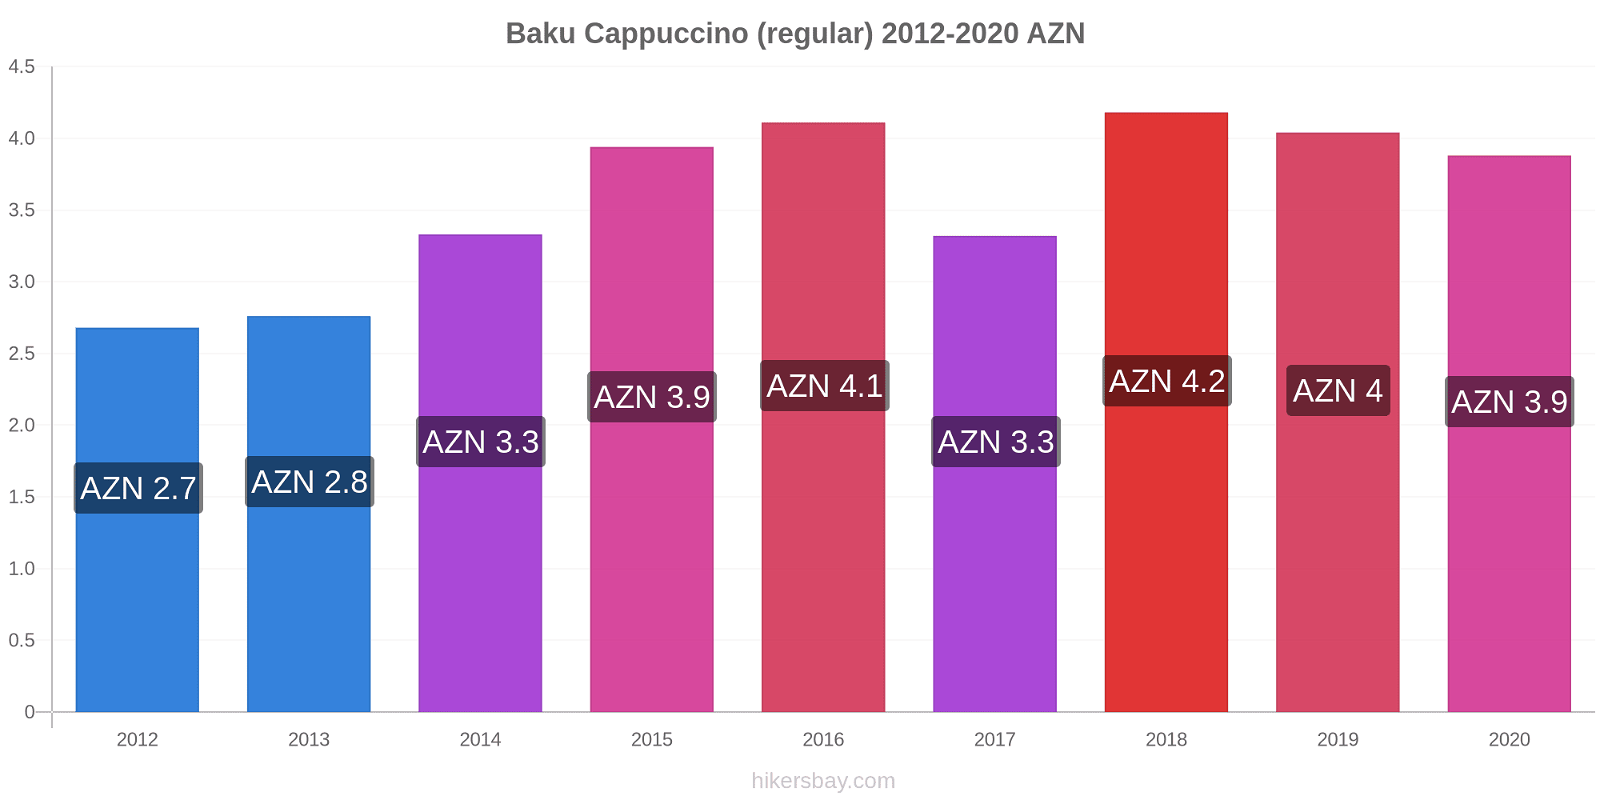 Baku variação de preço Capuccino (regular) hikersbay.com